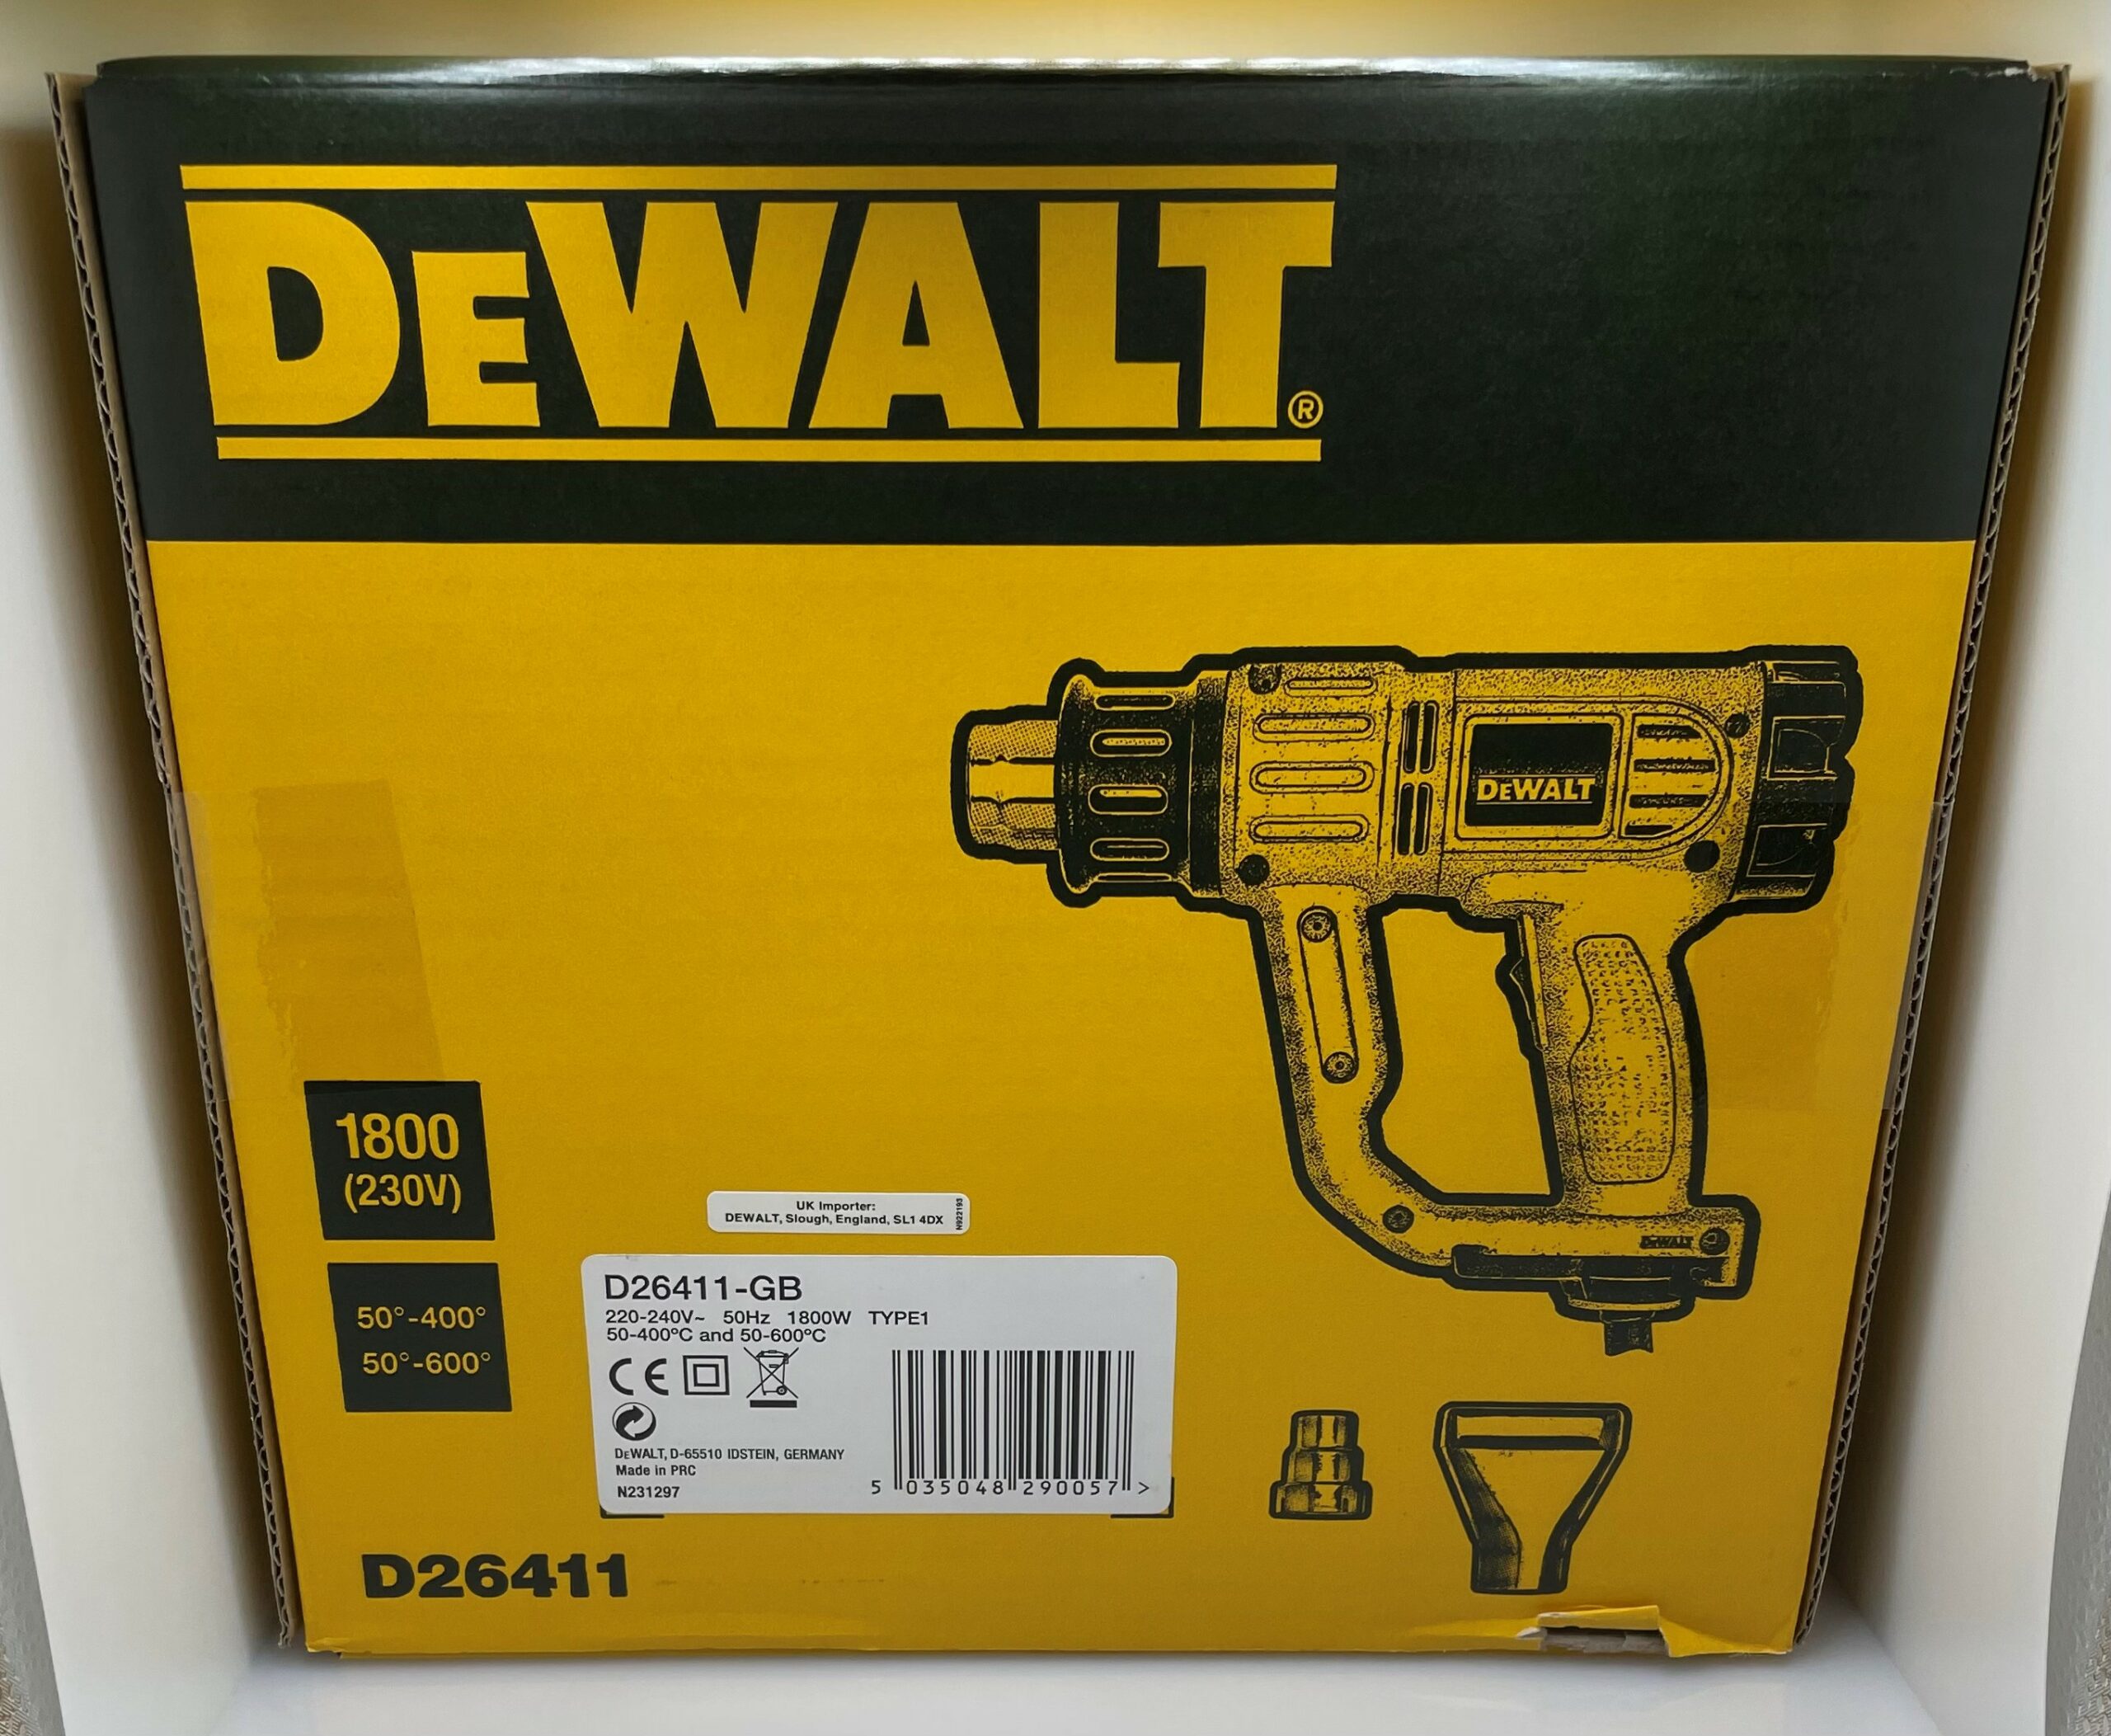 800g DEWALT D26411 1800W Standard Heat Gun, 1800 Watt at Rs 3560